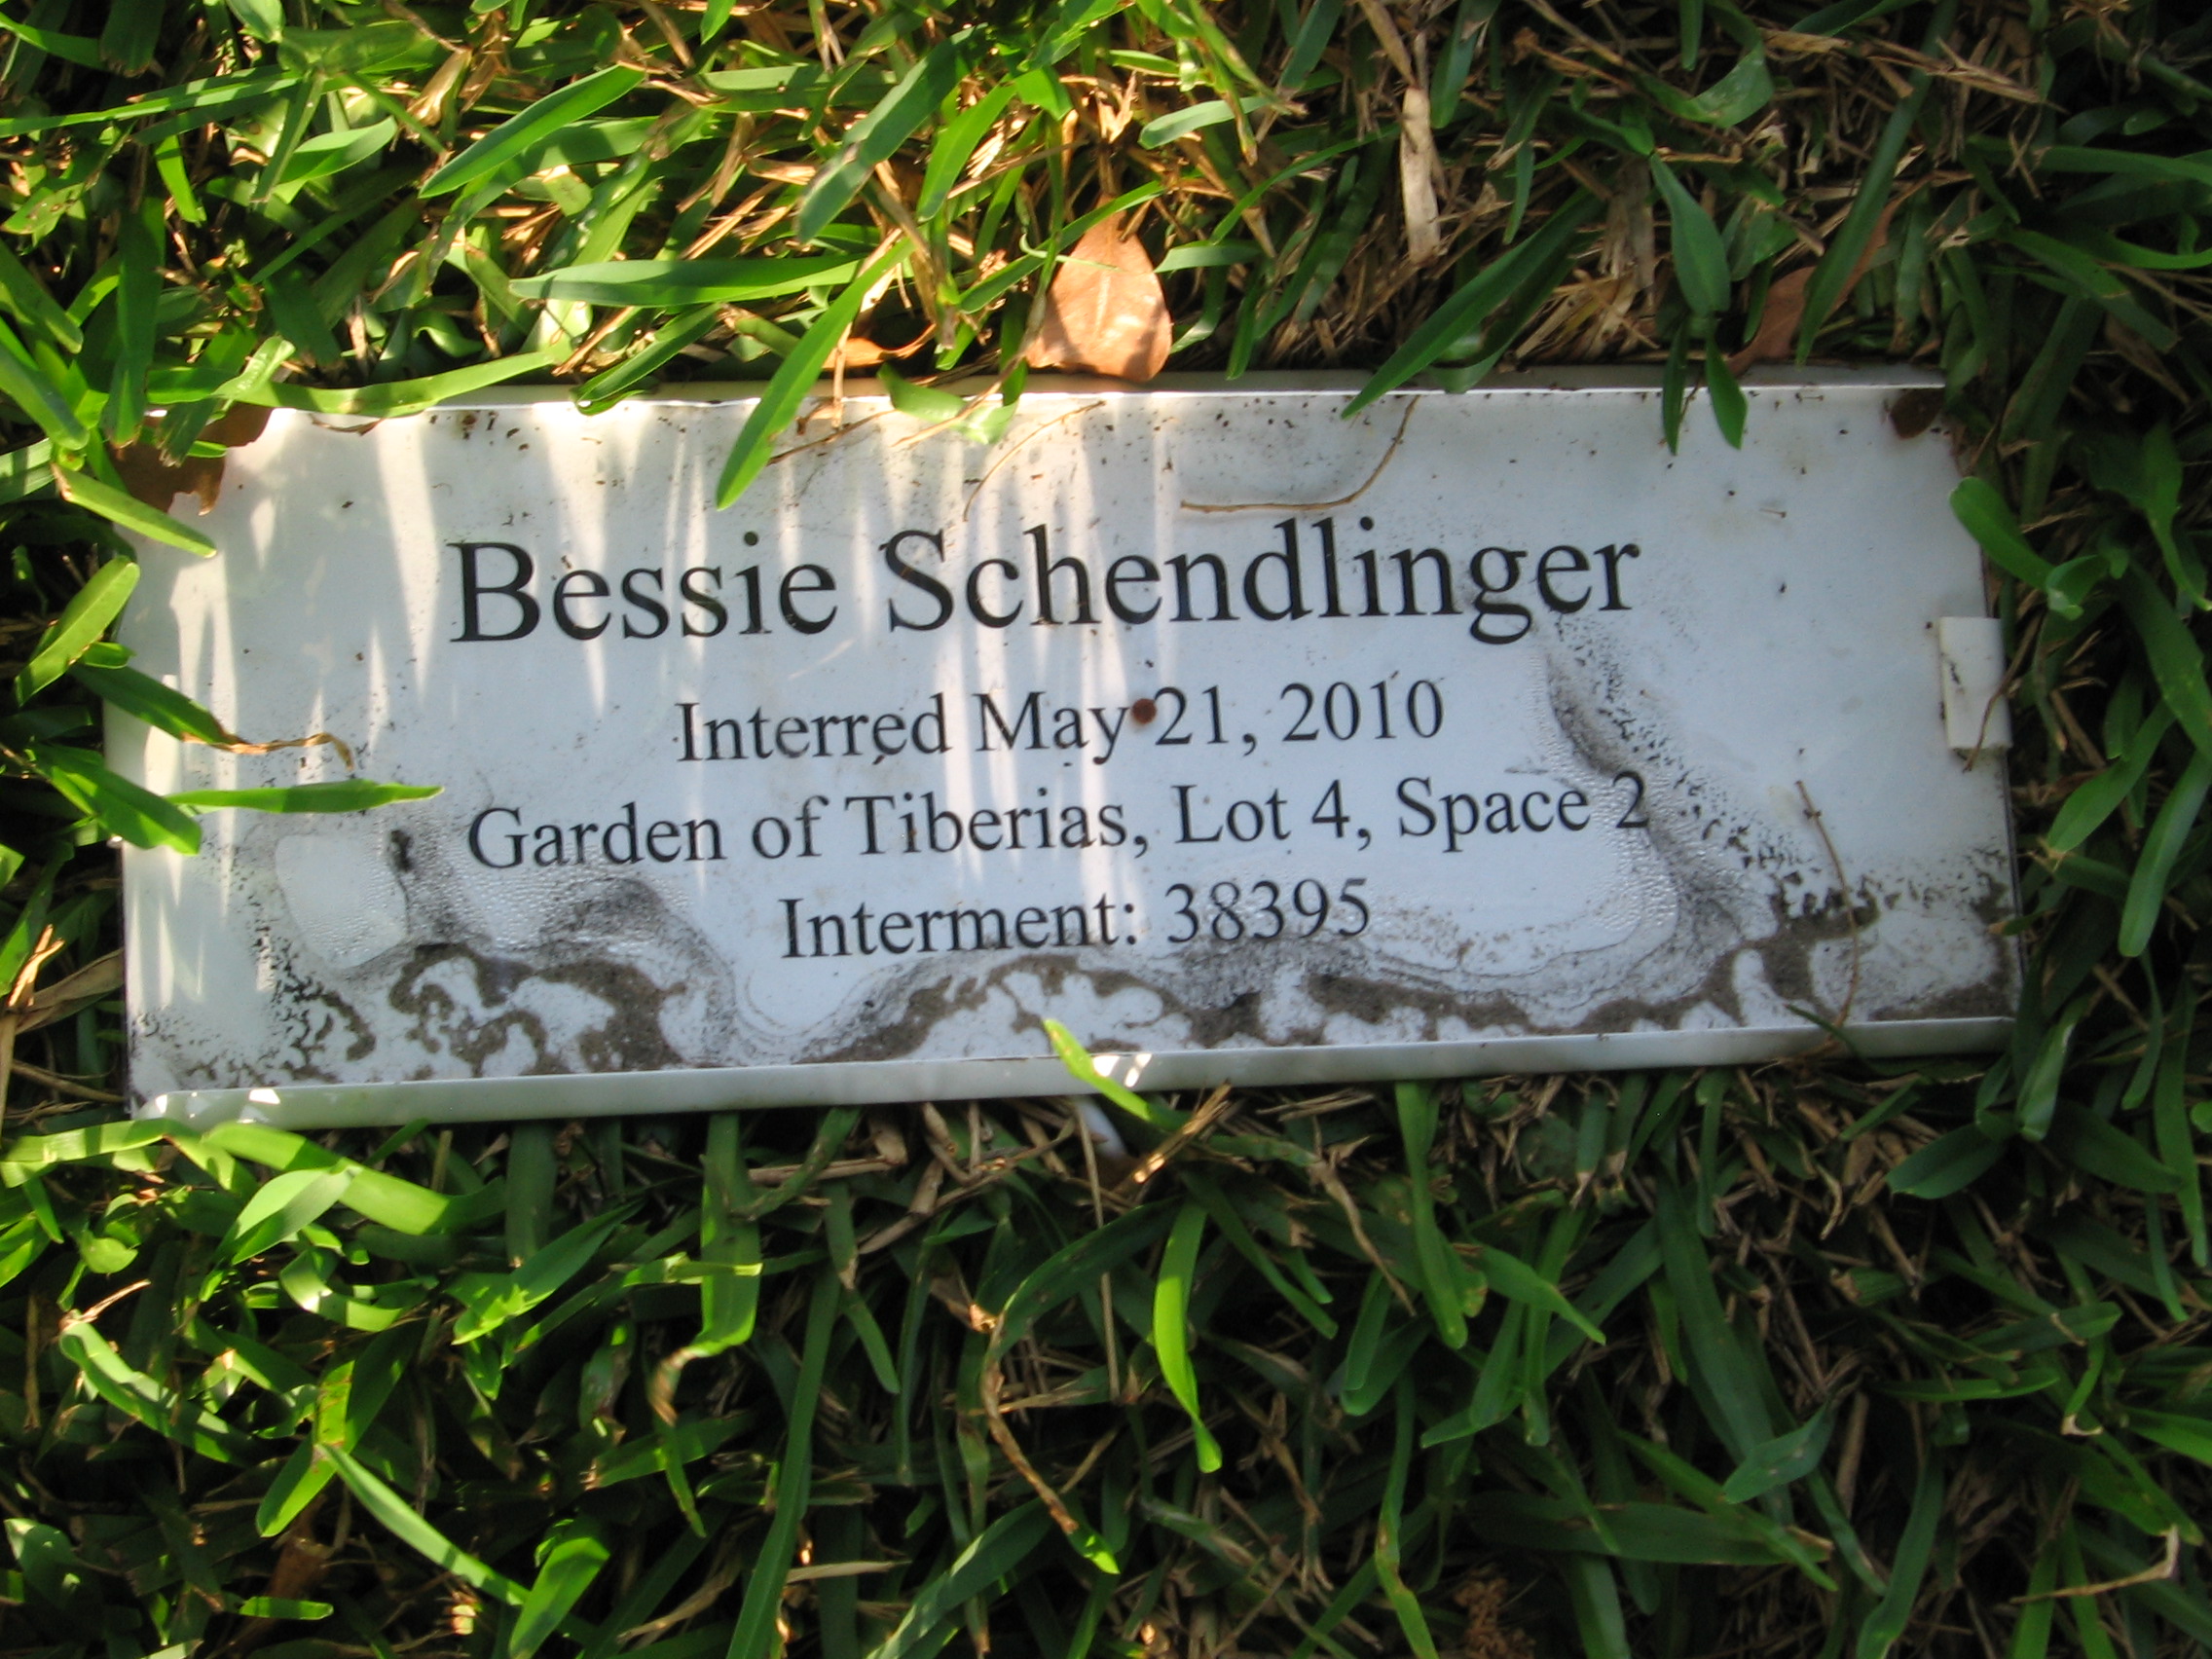 Bessie Schendlinger